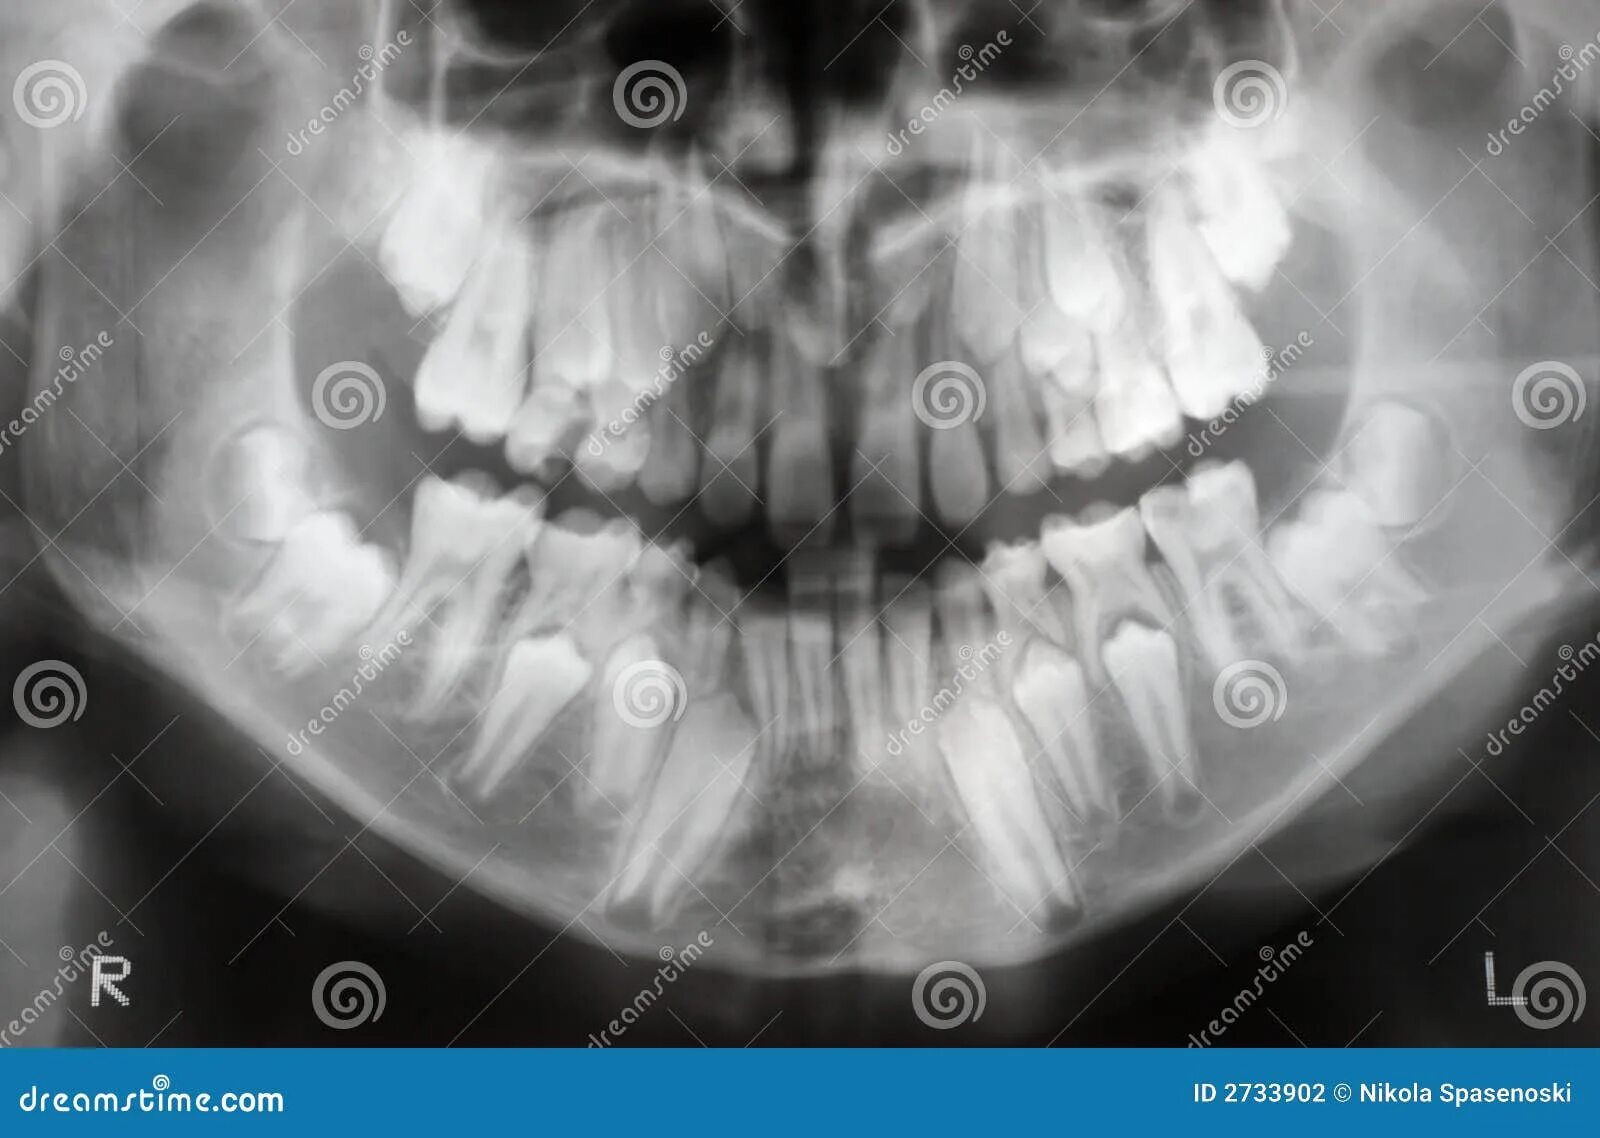 Экзостоз кости челюсти. Смена молочных зубов у детей рентген. Экзостоз верхней челюсти рентген. Снимок черепа ребенка с зубами. Детский череп рентген